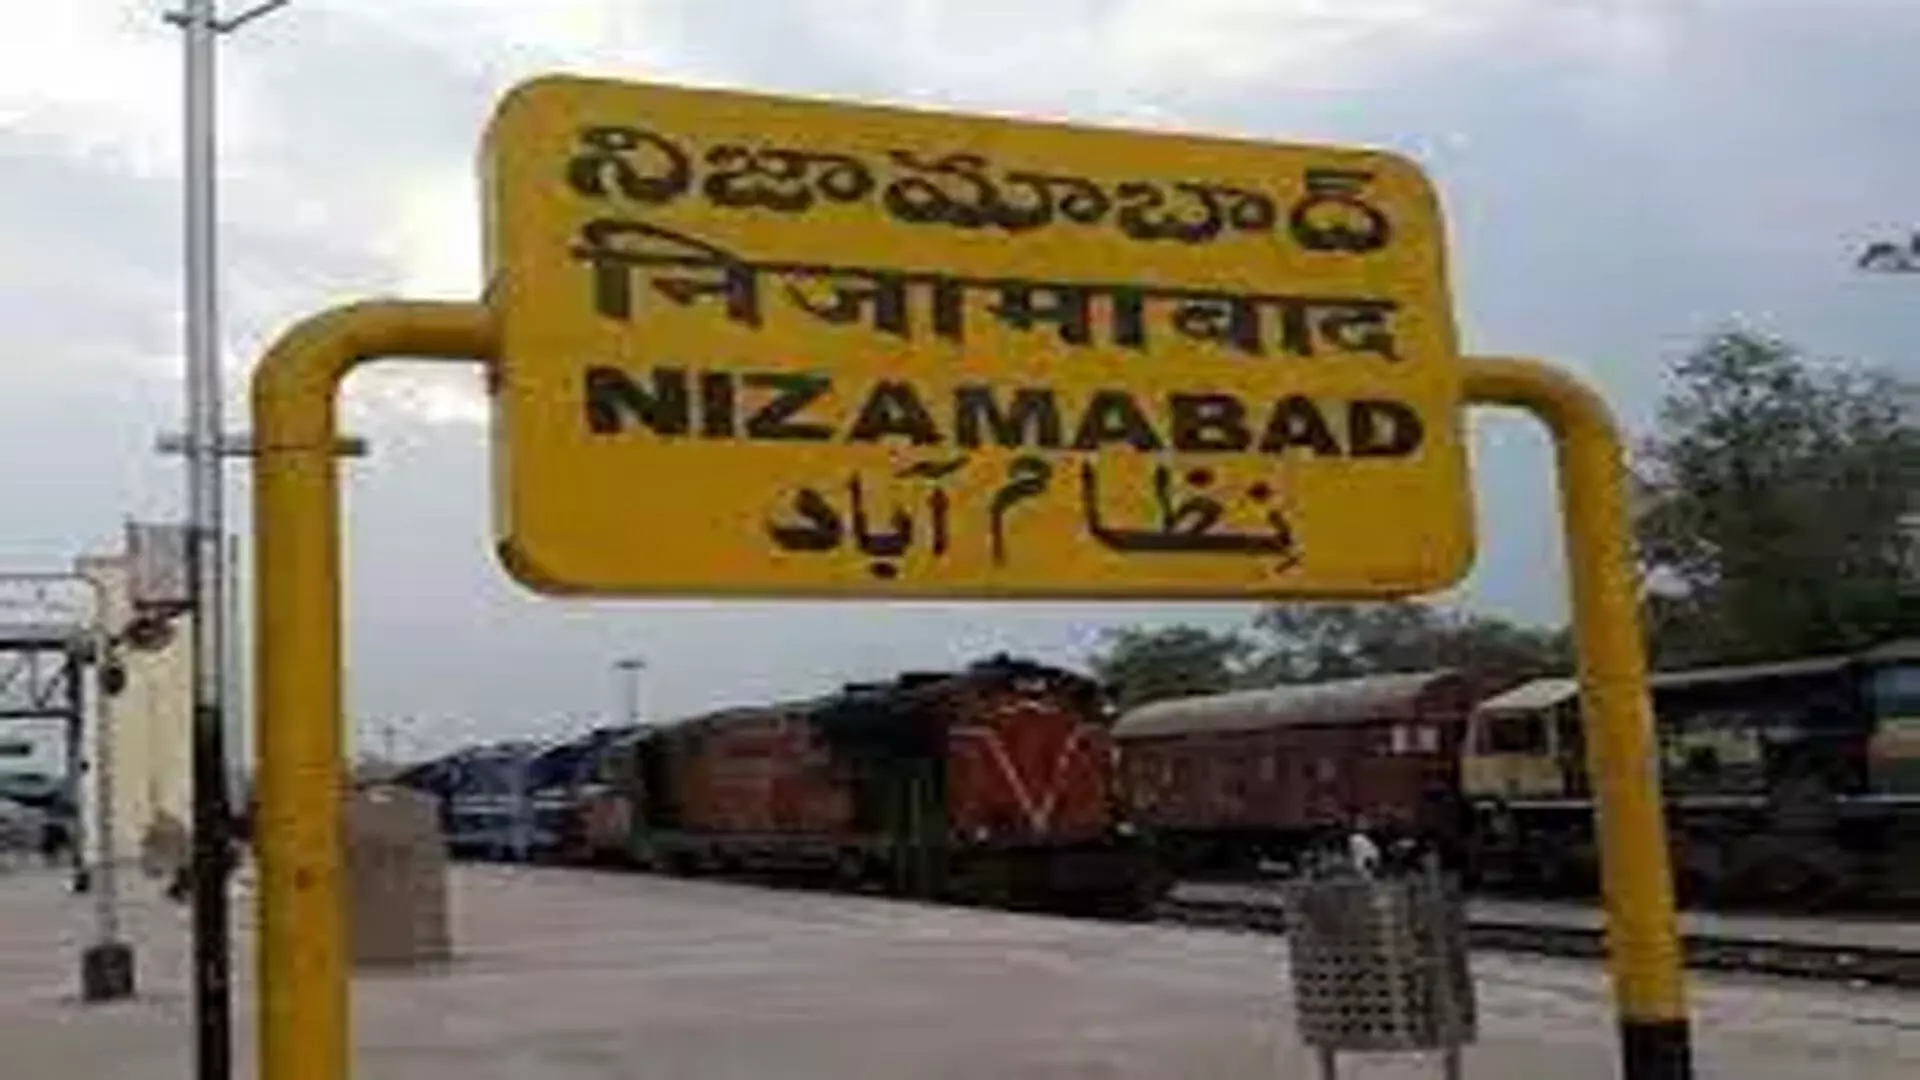 Nizamabad के लोग स्मार्ट सिटी के लिए धन की मांग कर रहे